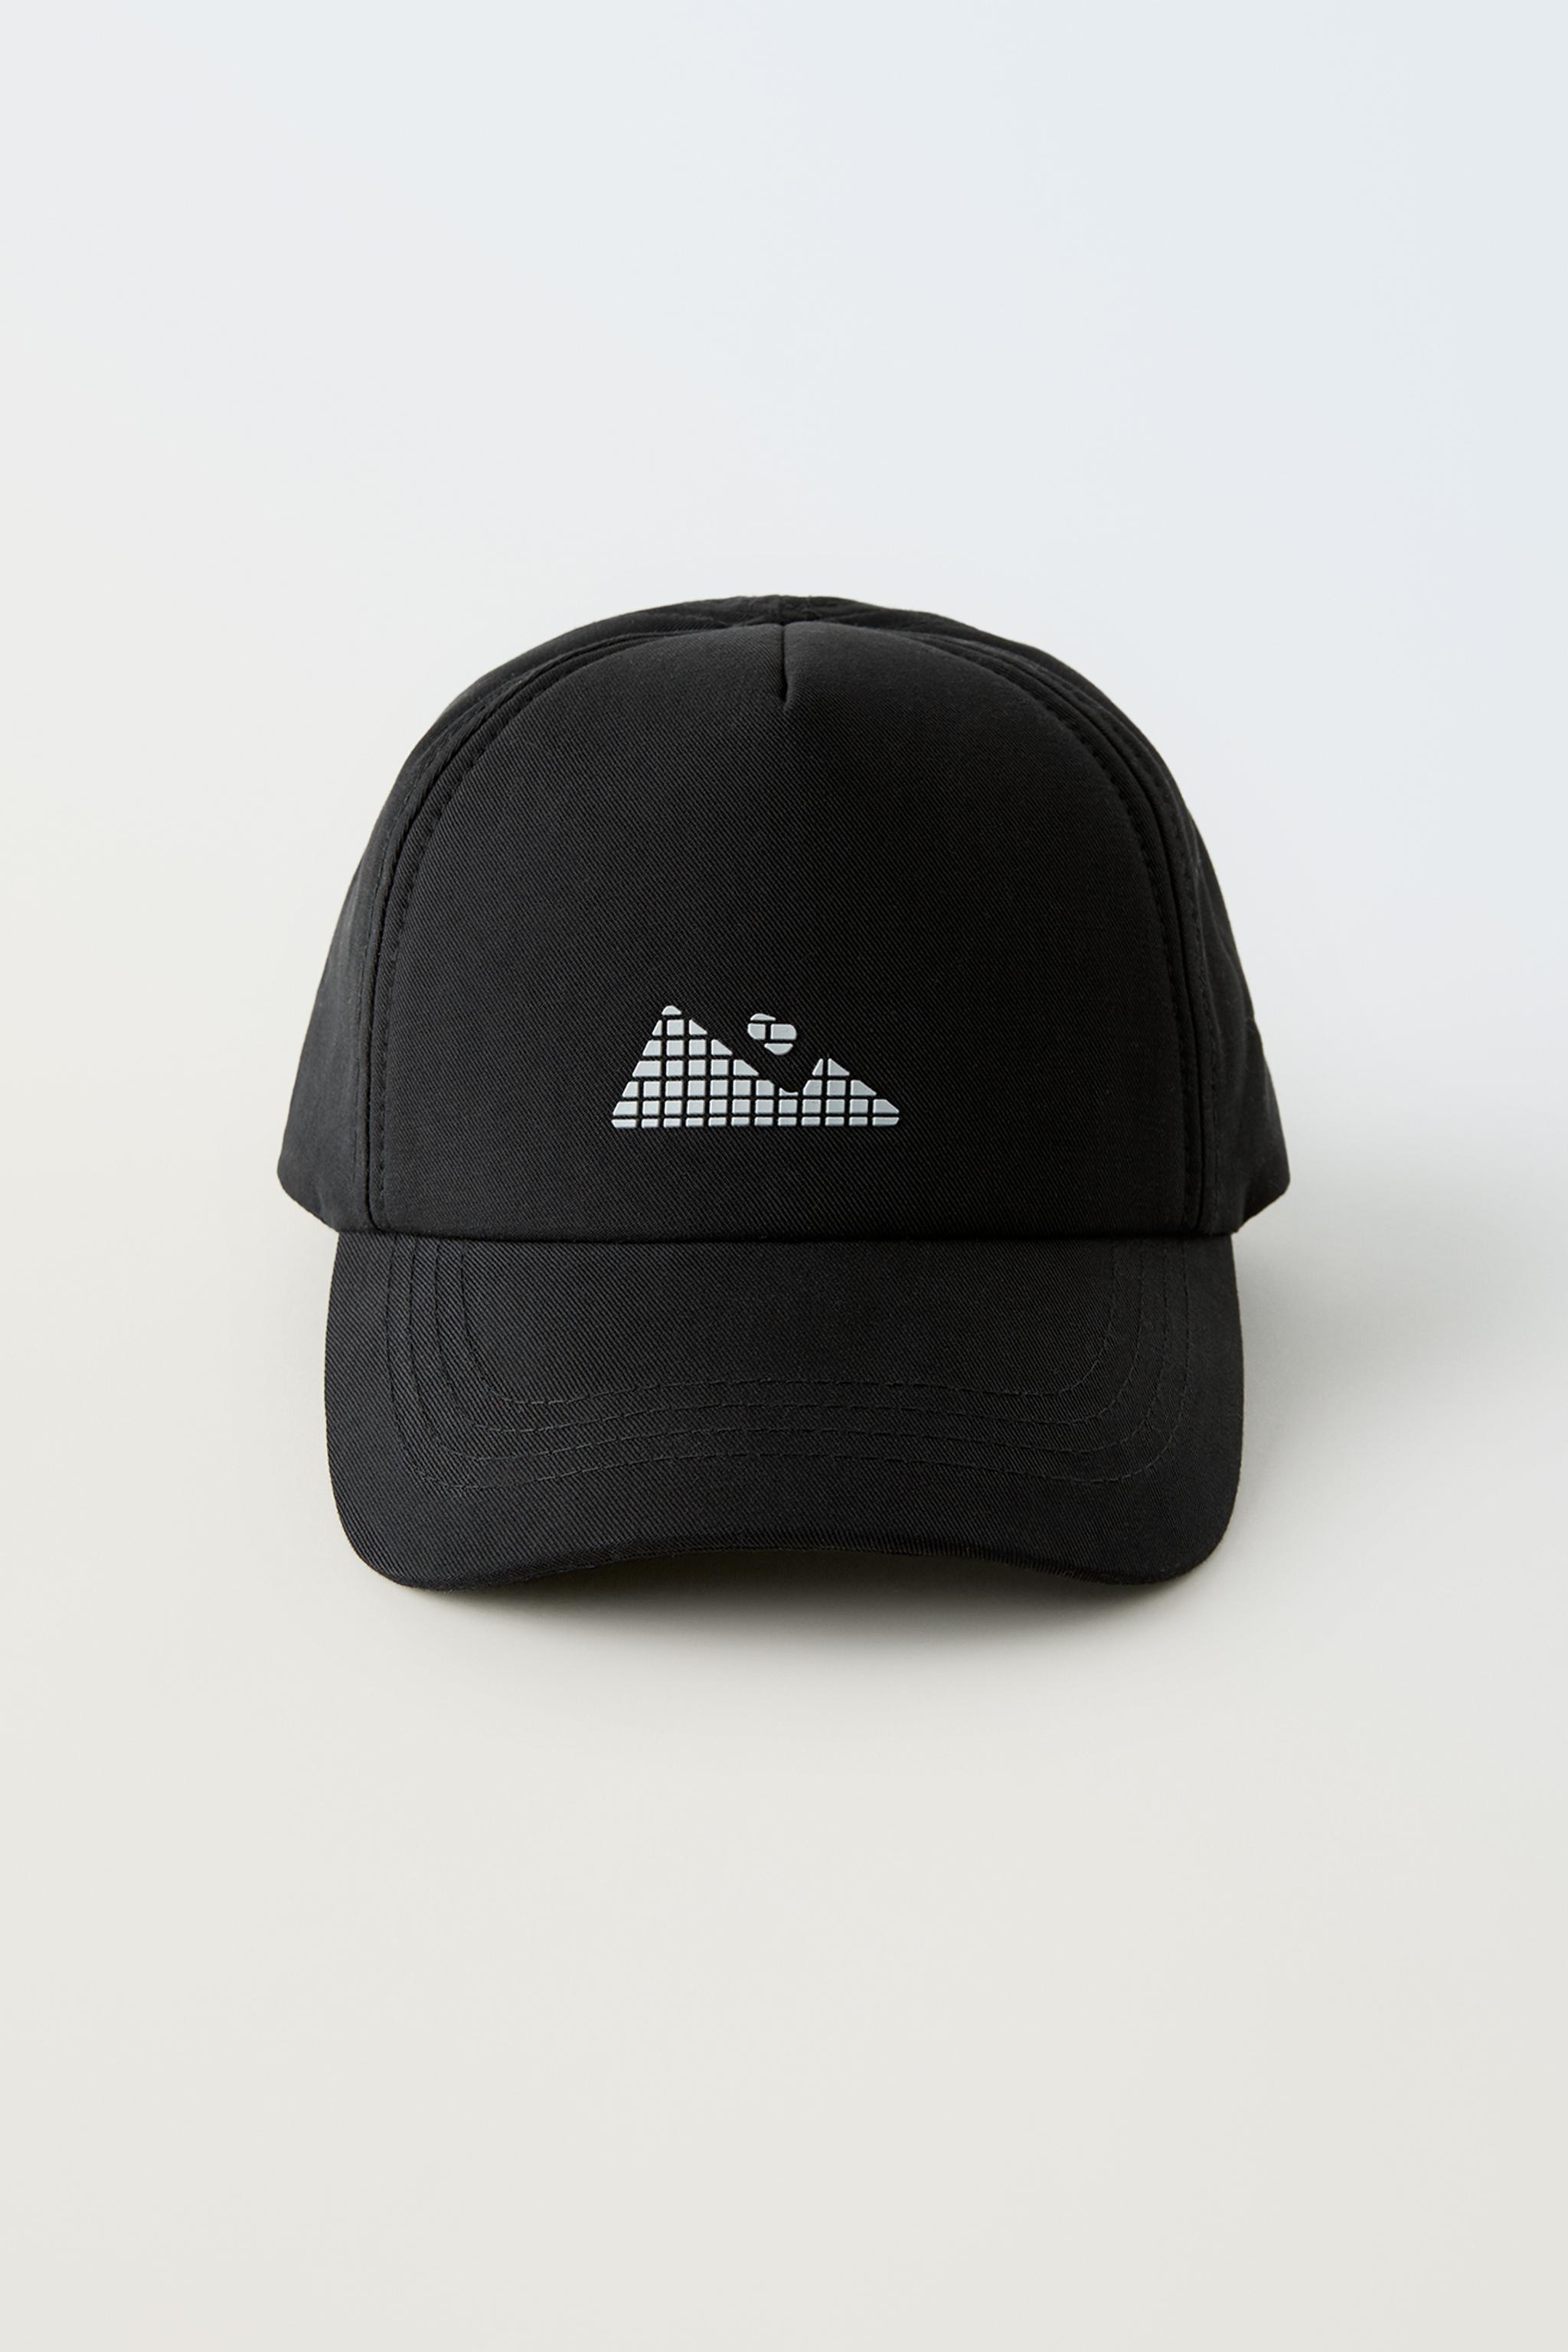 Gorra negra técnica logo reflectante, Complementos de mujer